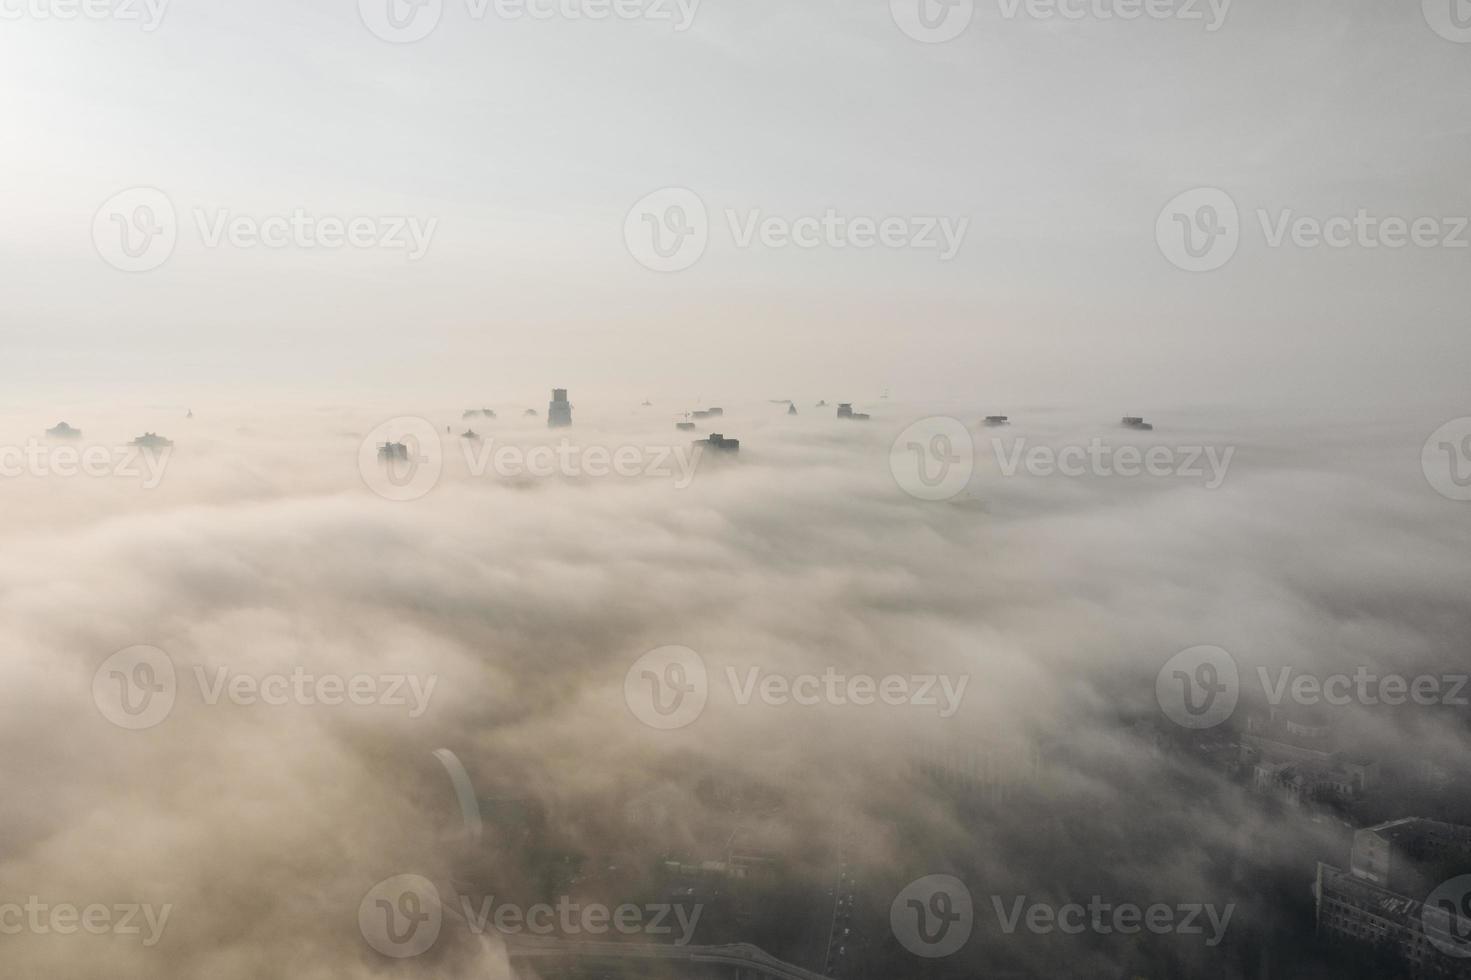 vista aérea de la ciudad en la niebla. rascacielos sobre la niebla foto